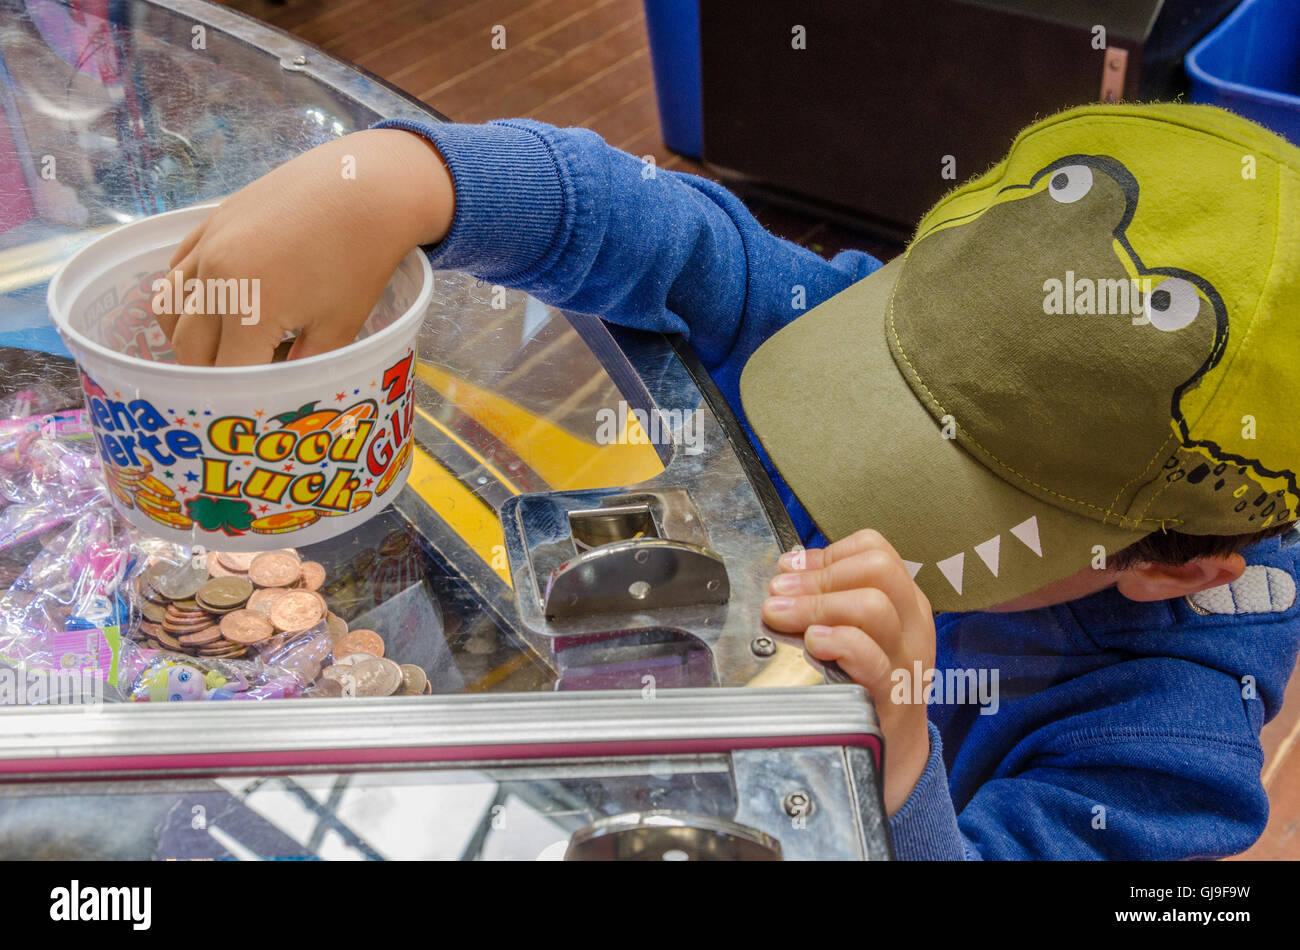 Ein kleiner Junge spielt auf einem 2P-Spielautomaten in einer Spielhalle in einem Ferienort. Stockfoto